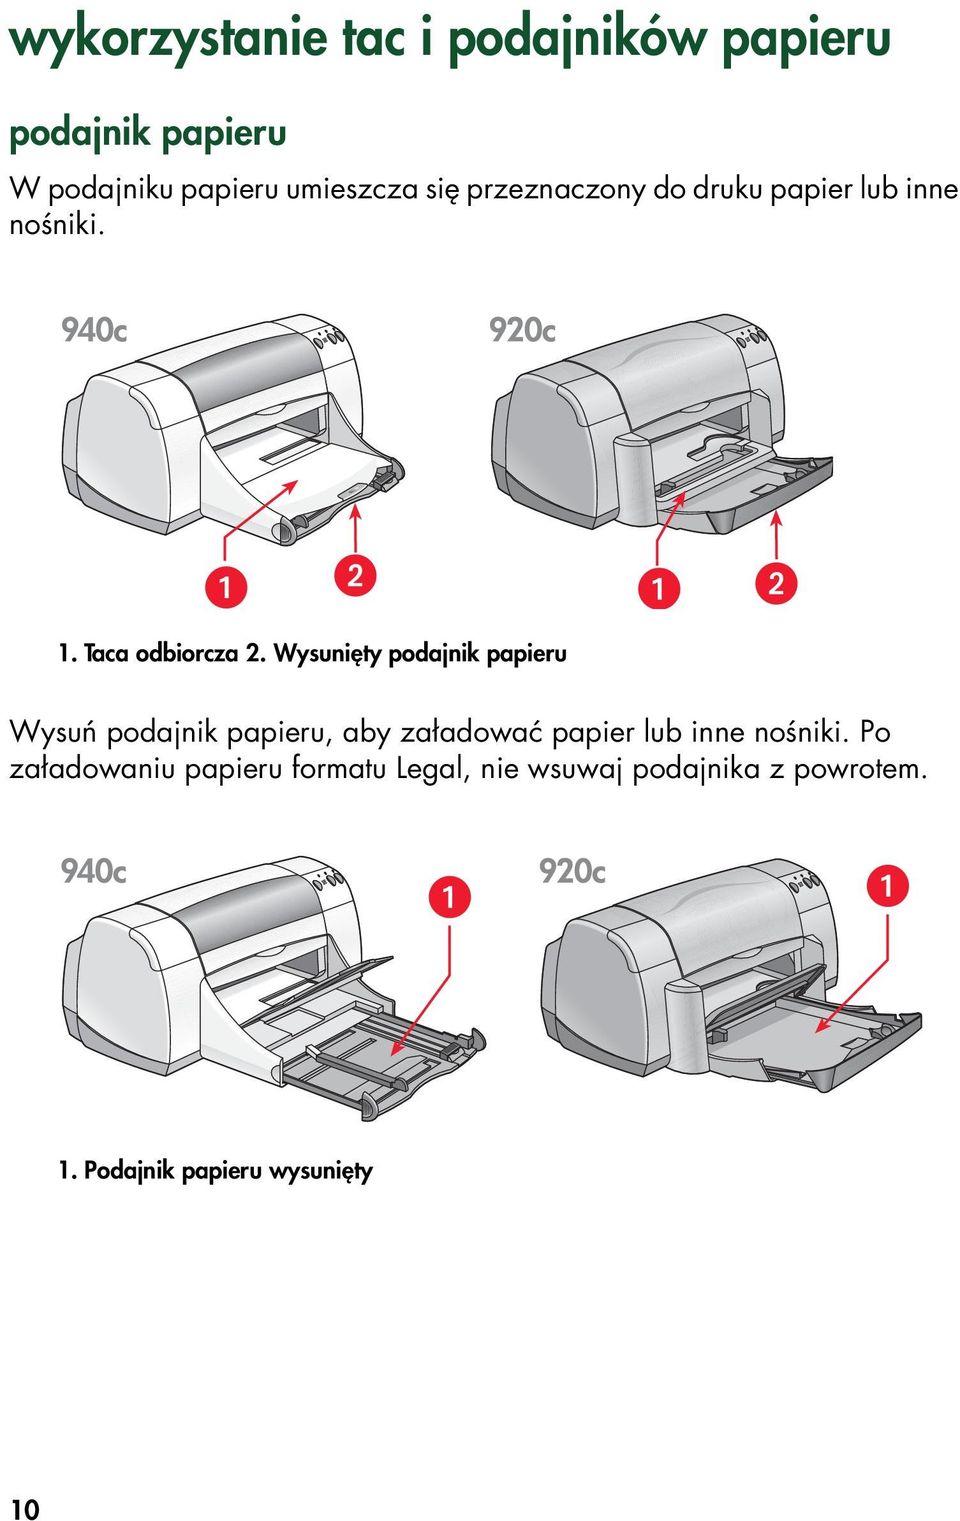 Wysunięty podajnik papieru Wysuń podajnik papieru, aby załadować papier lub inne